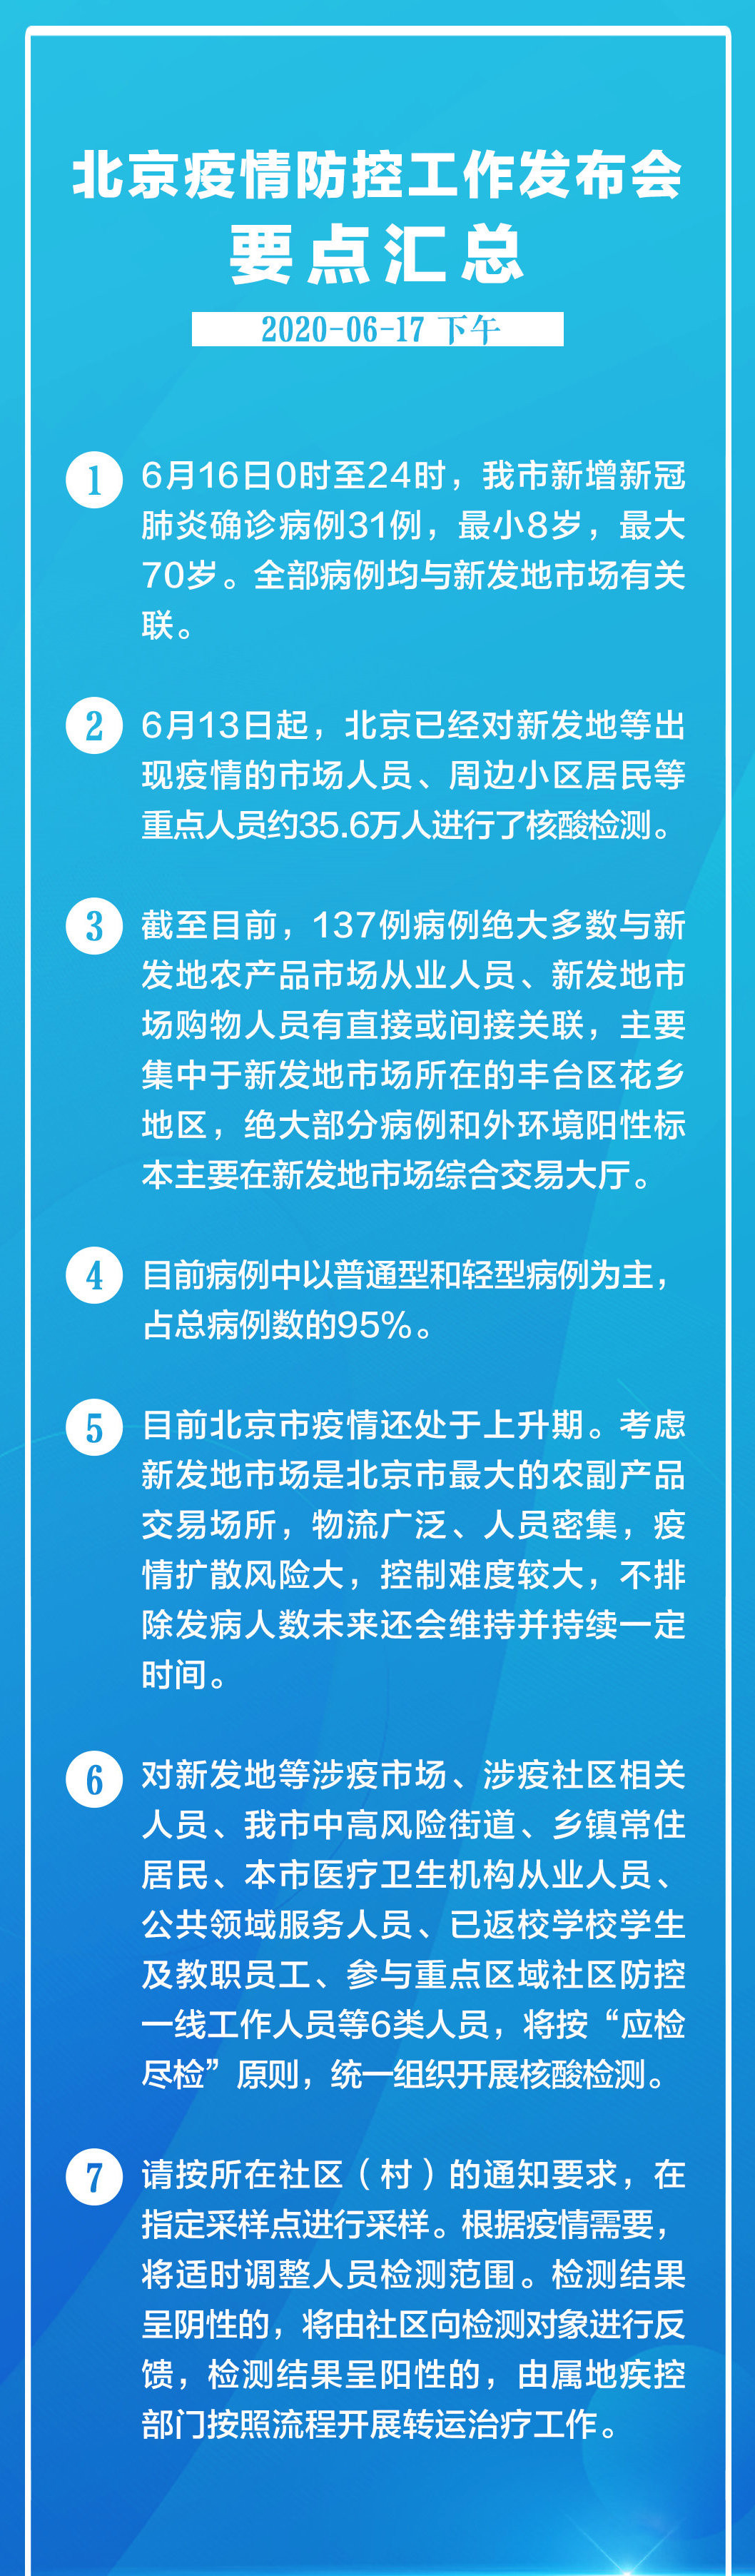 北京又增5个街道升级中风险 昨日新增31例确诊